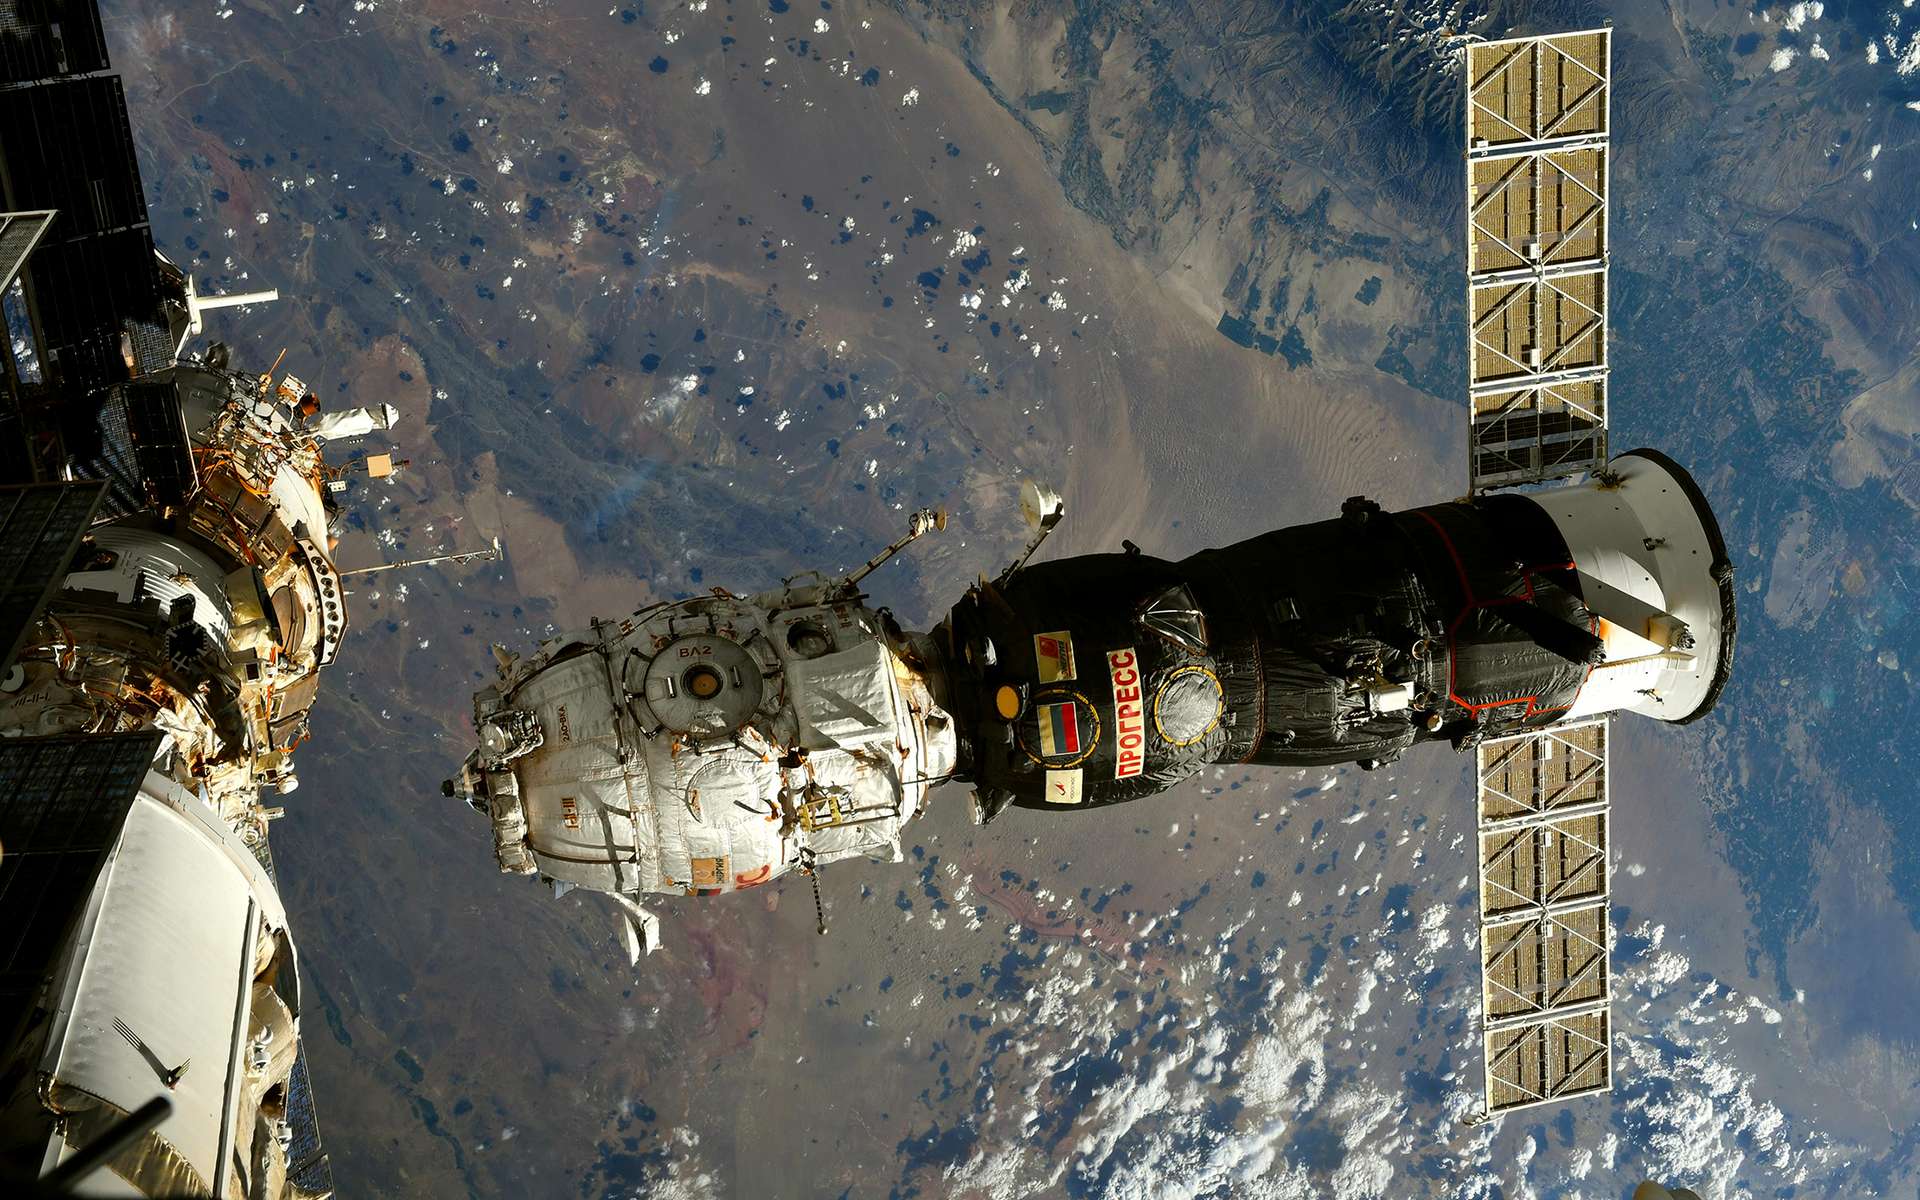 Le module Pirs a quitté la Station spatiale et s'est désintégré dans l'atmosphère sous le regard de Thomas Pesquet